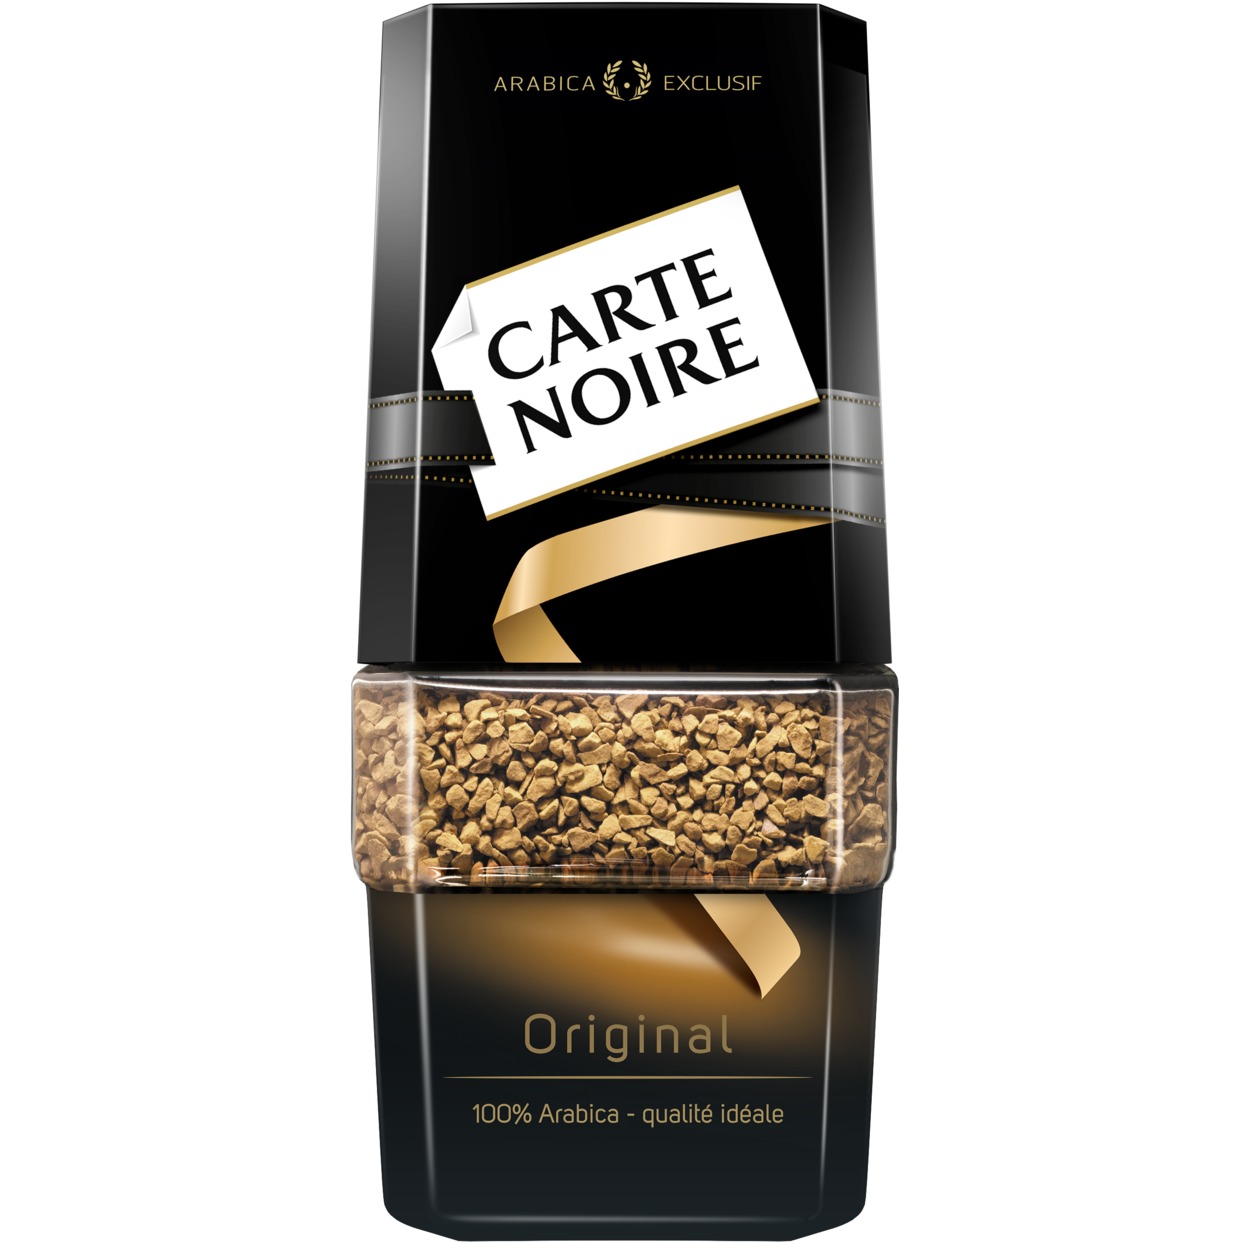 Кофе Carte Noire, Original, растворимый, 95 г по акции в Пятерочке